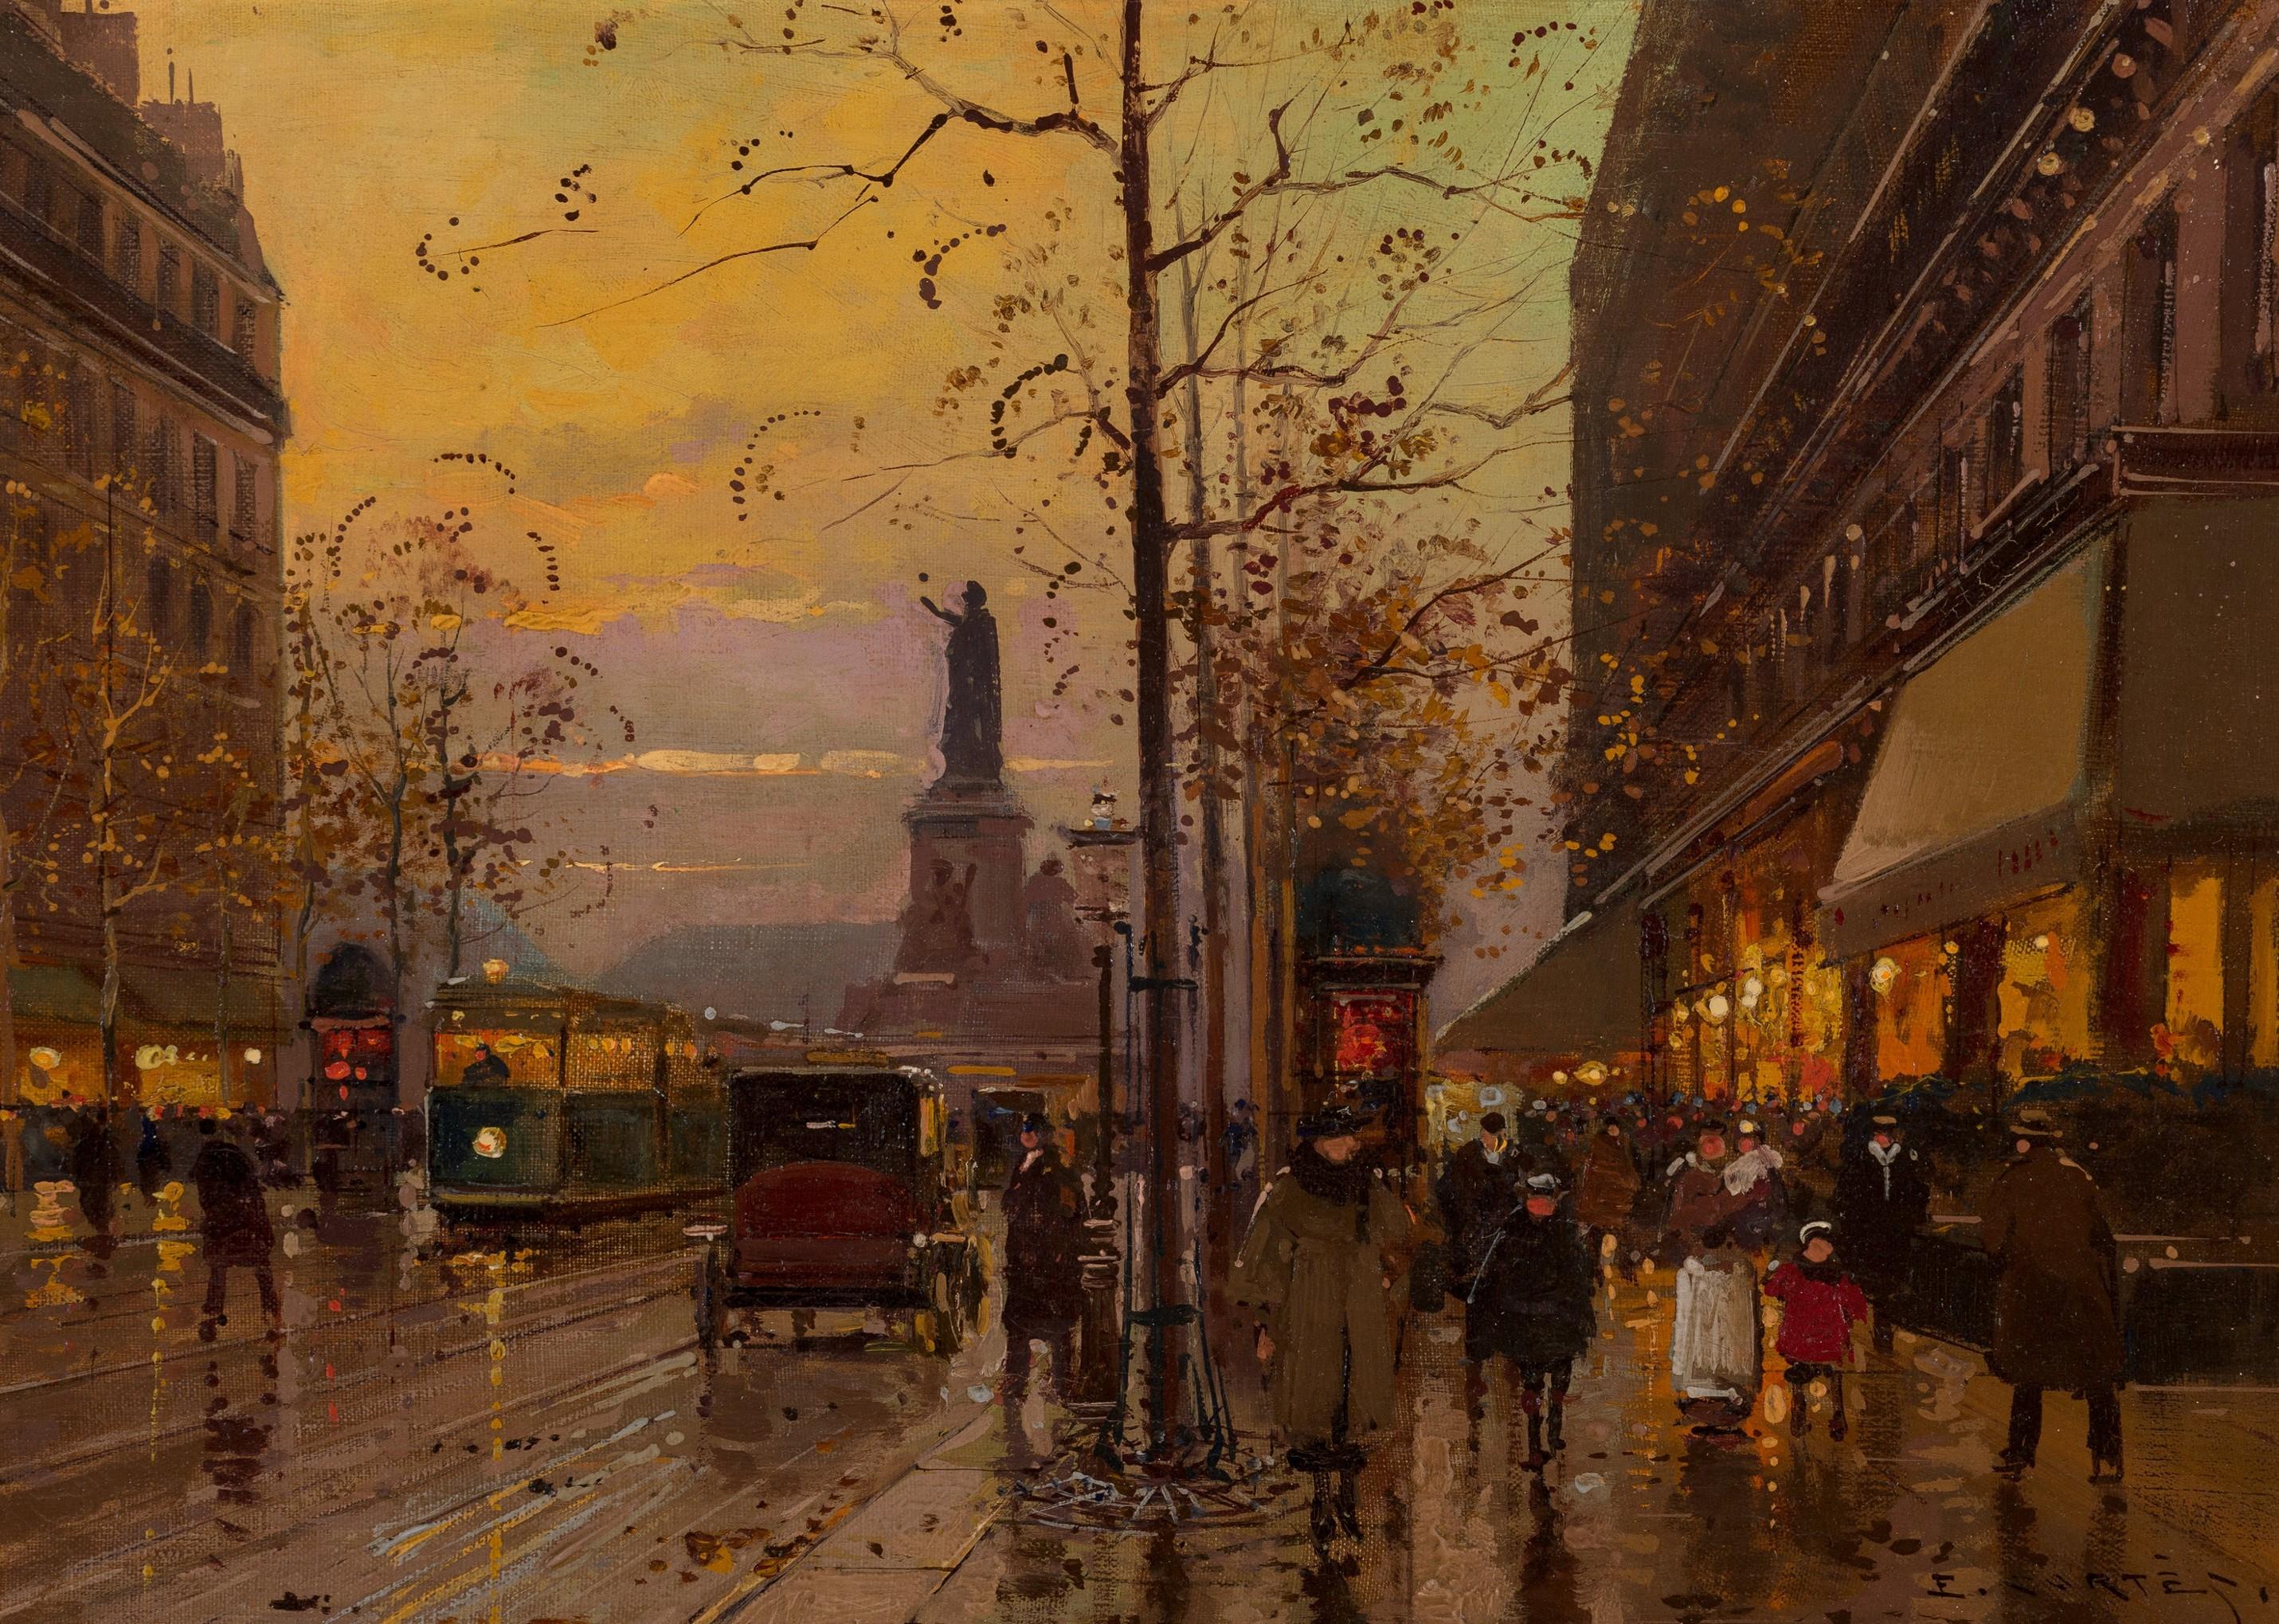 Place de la République, crépuscule - Twilight oil painting of Paris - Painting by Édouard Leon Cortès